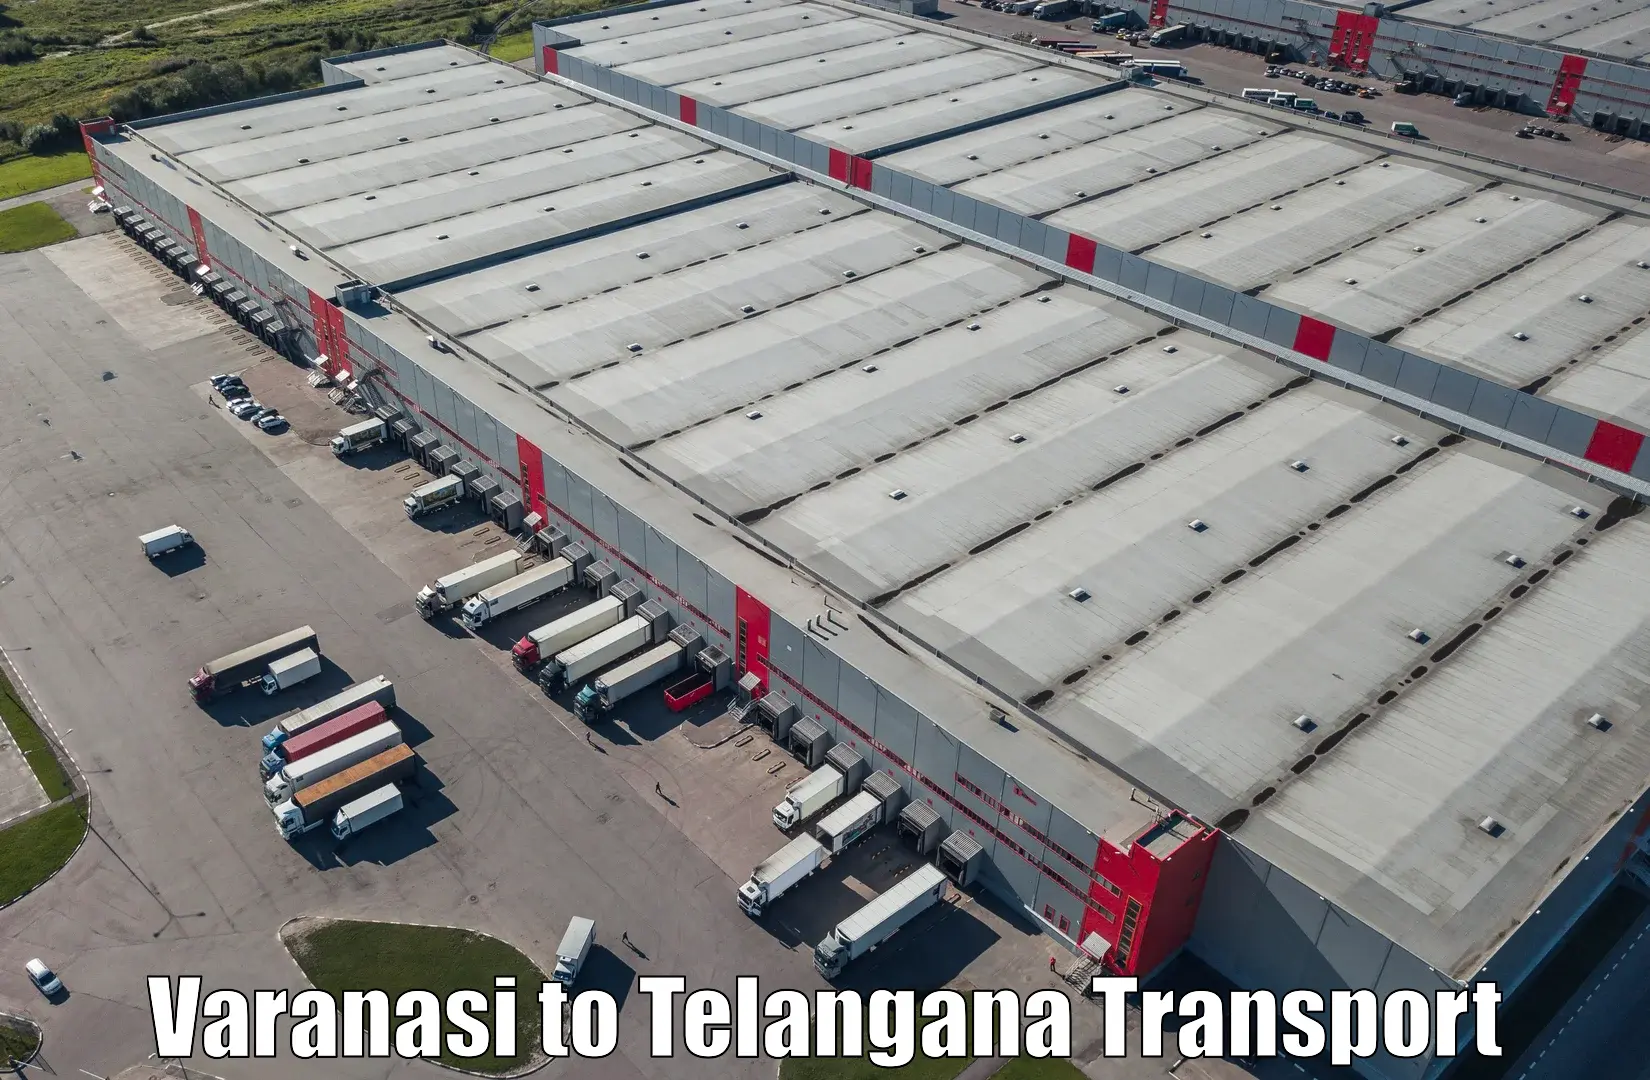 Truck transport companies in India in Varanasi to Shadnagar